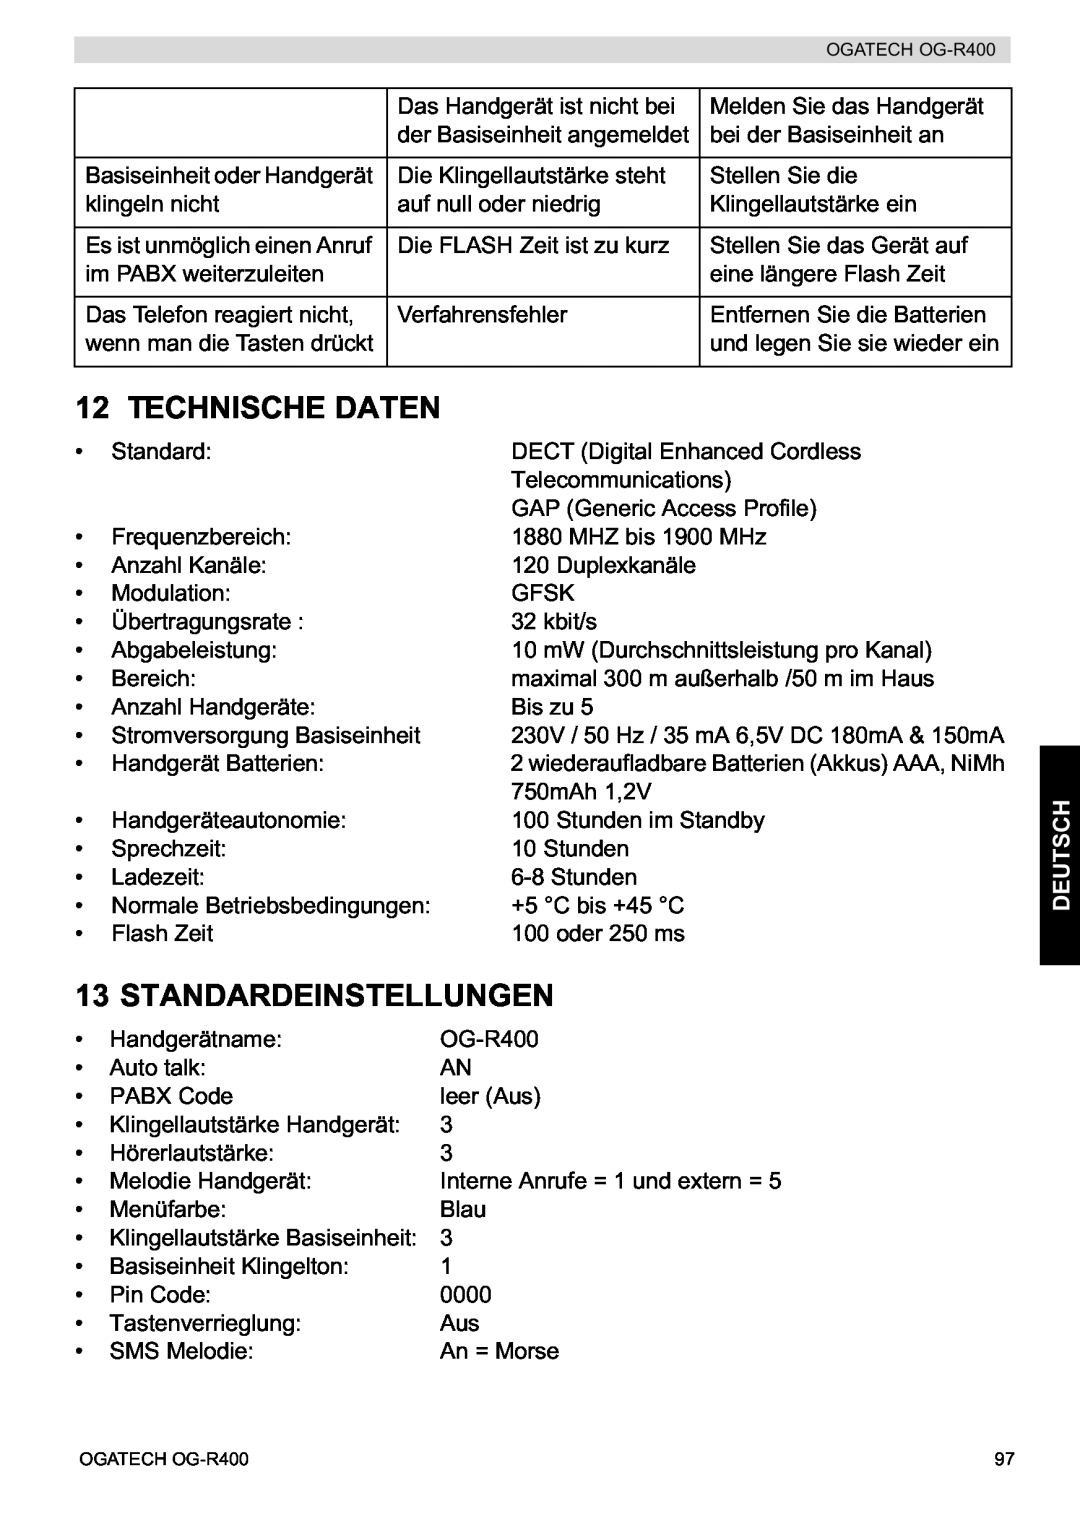 Topcom OG-R400 Technische Daten, Standardeinstellungen, Deutsch, der Basiseinheit angemeldet, Basiseinheit oder Handgerät 